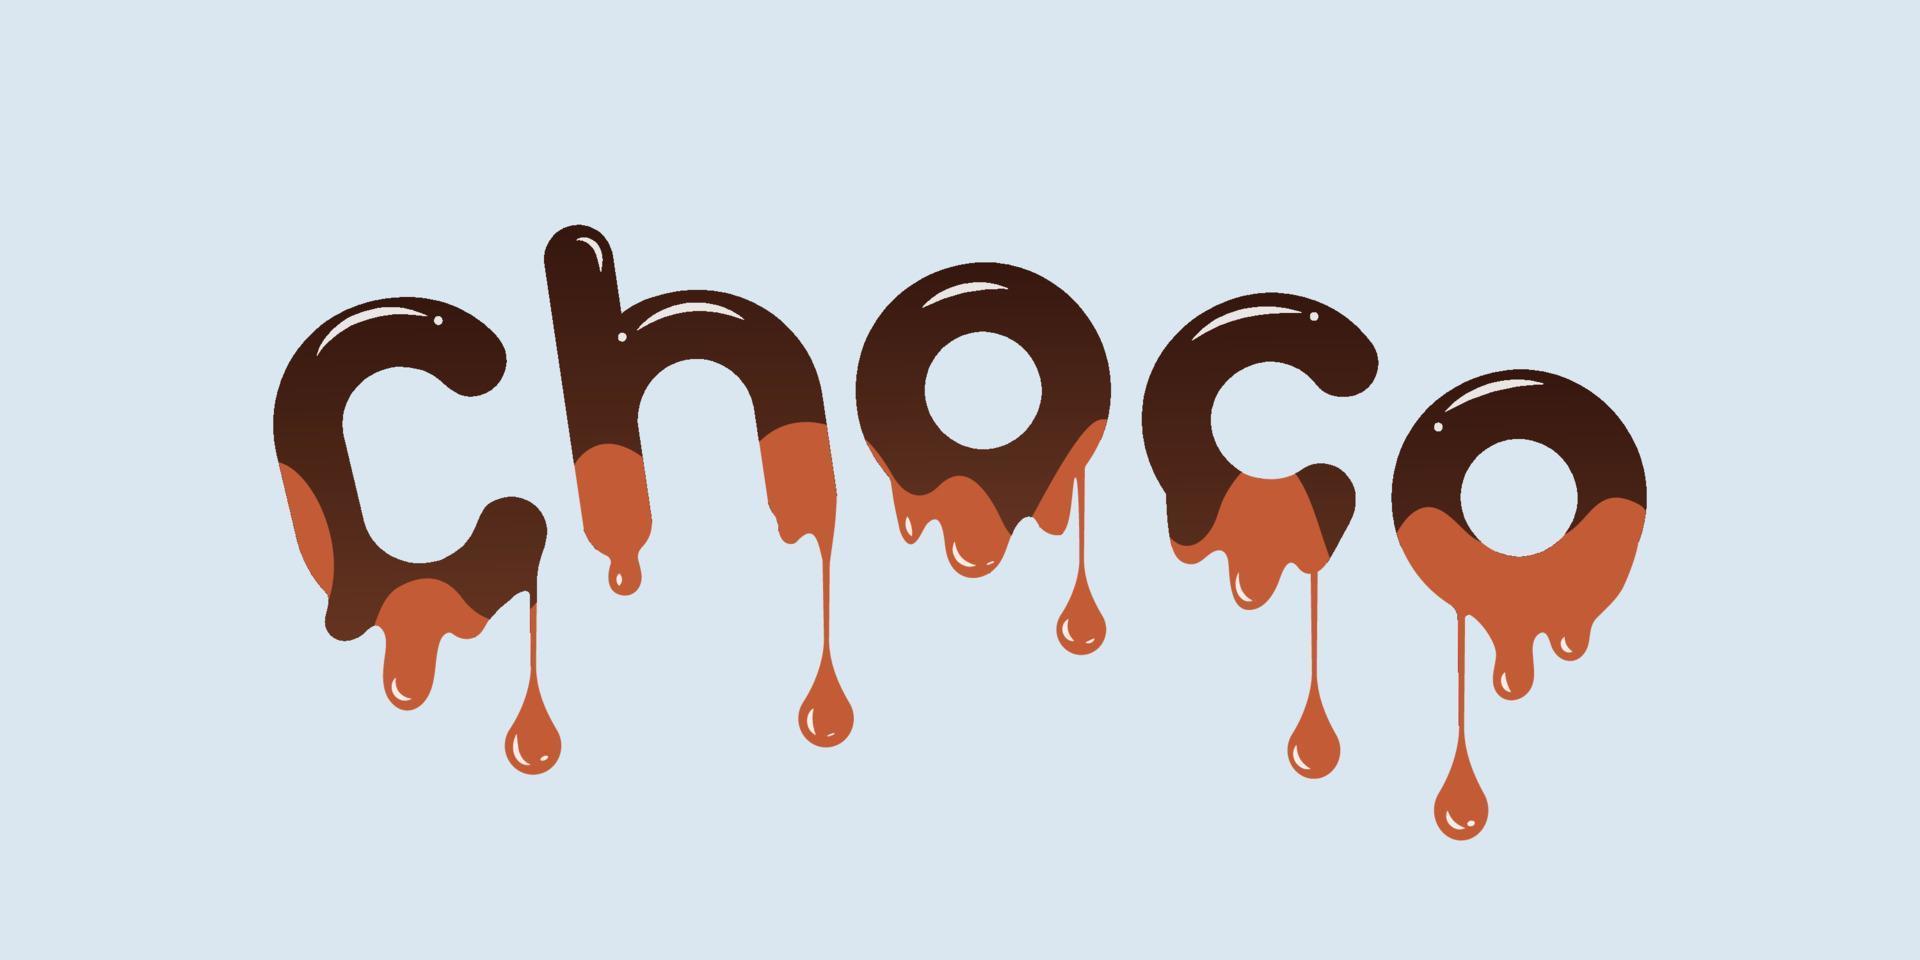 choco - chocoladebanner. ontwerp vectorillustratie. vector